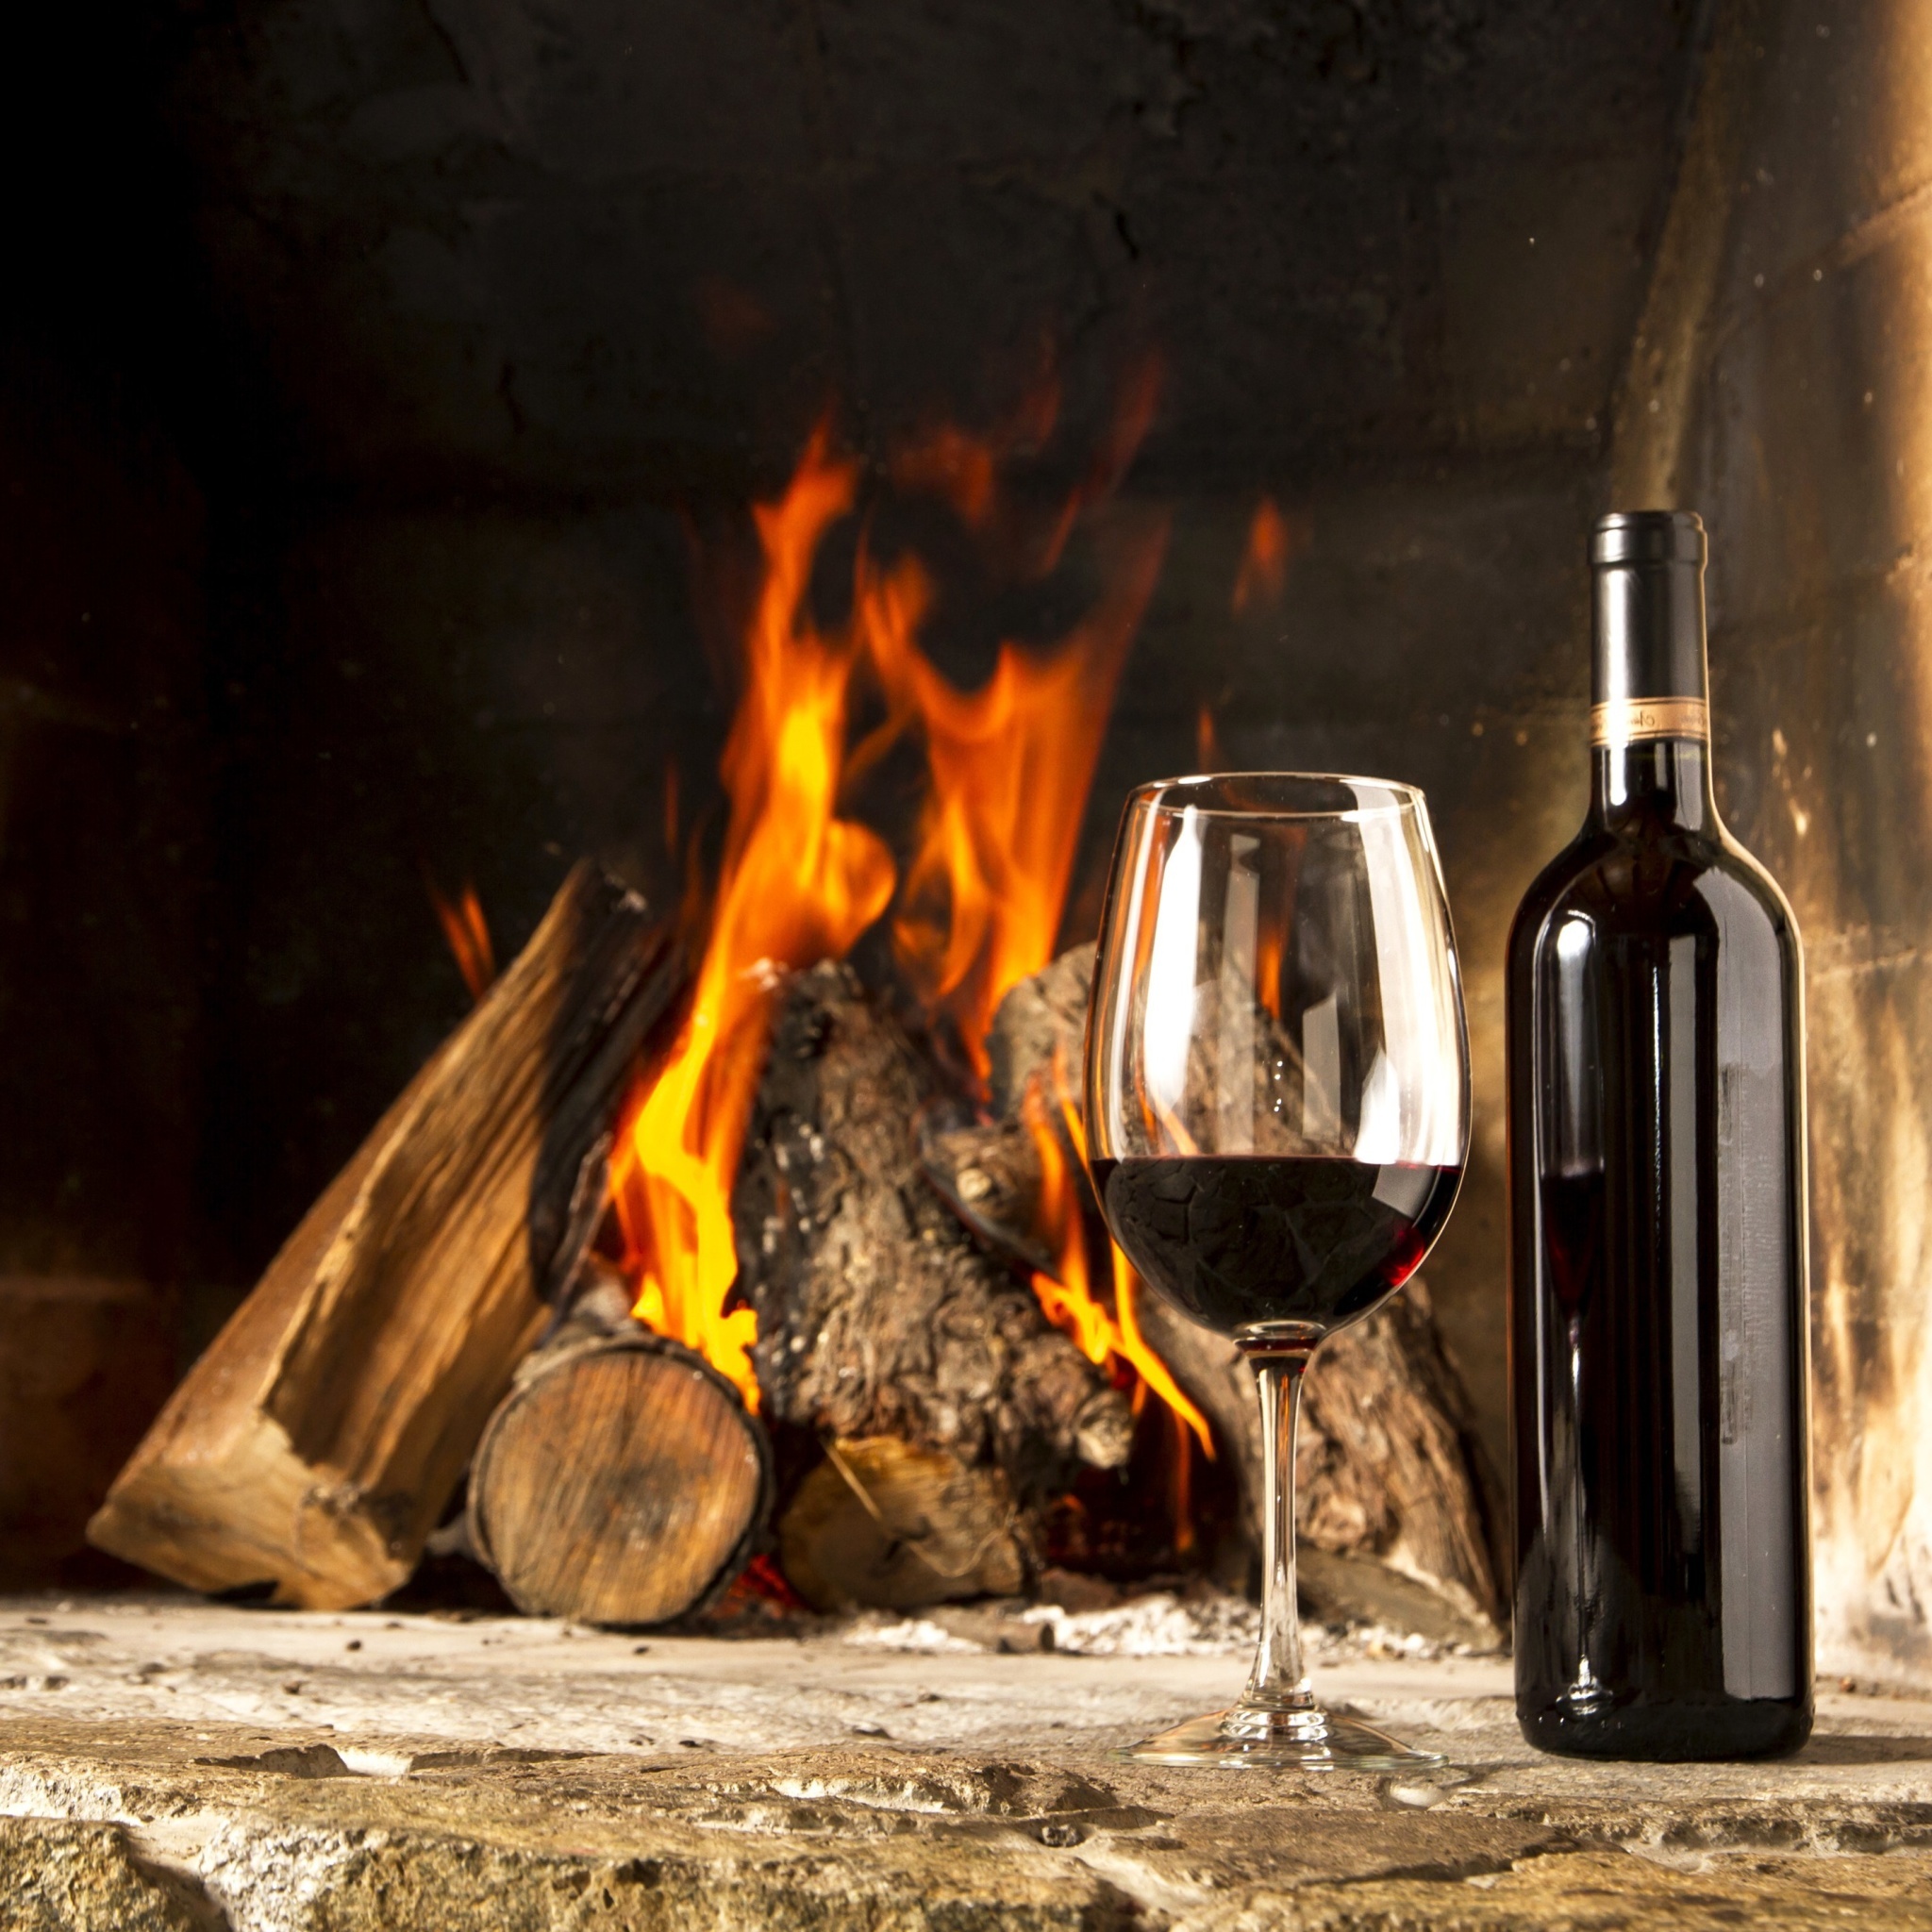 Sfondi Wine and fireplace 2048x2048